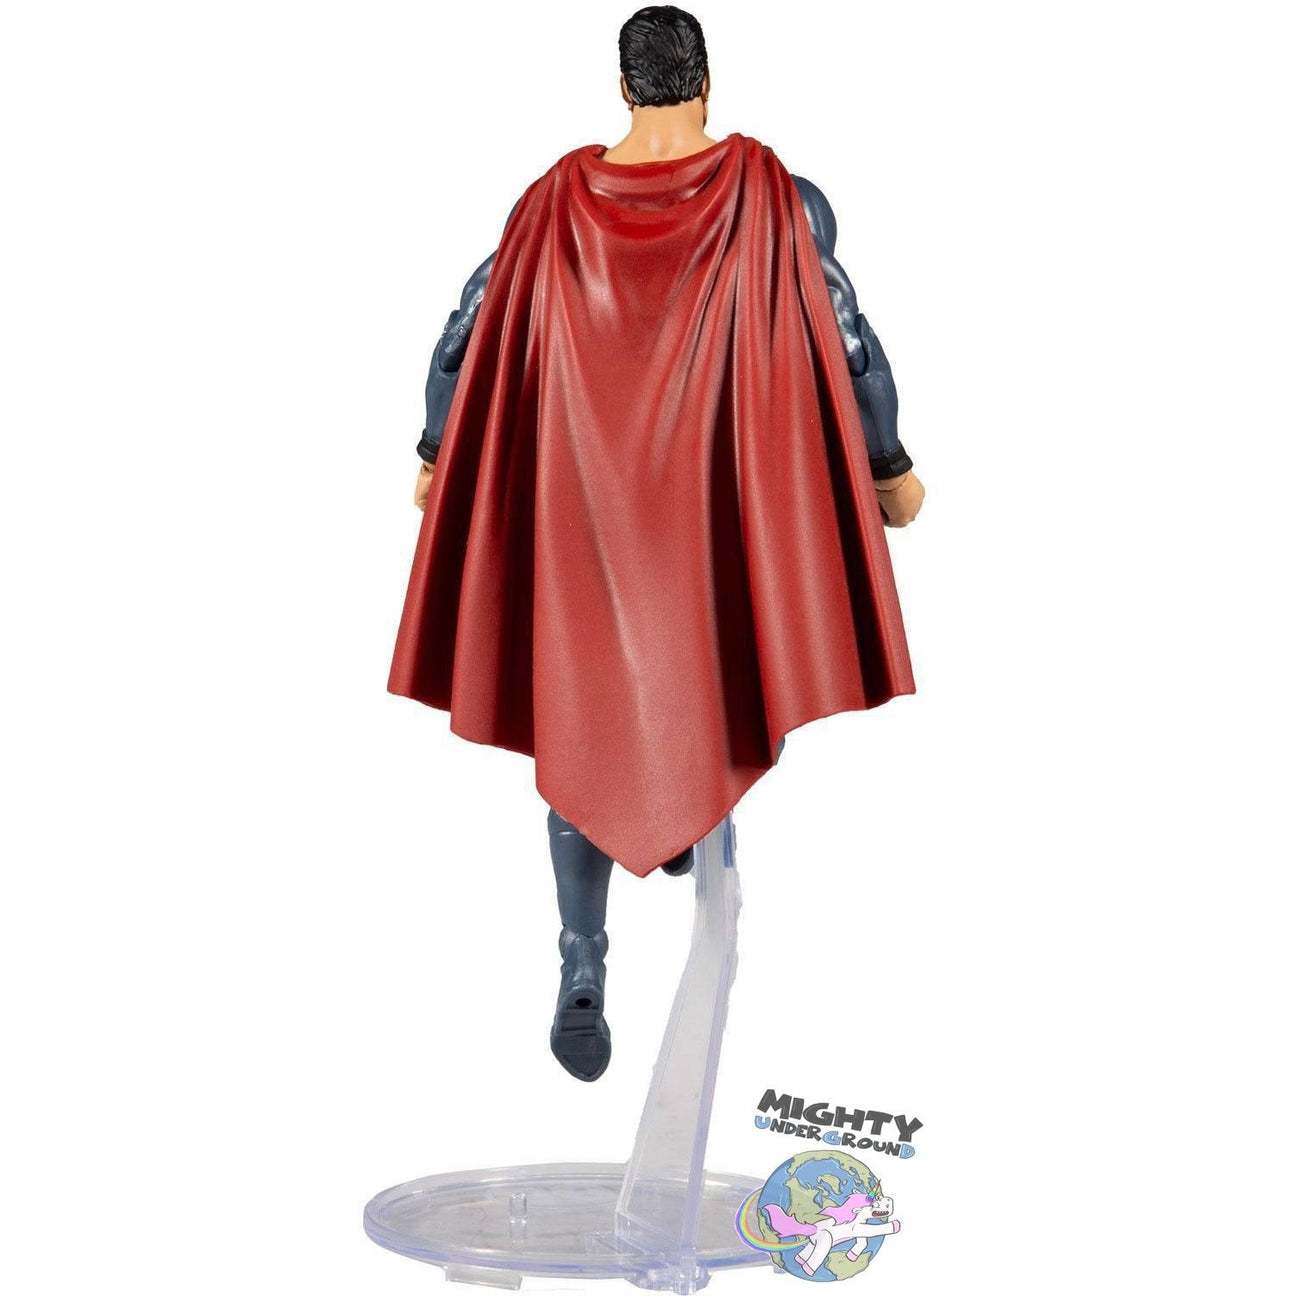 DC Multiverse: Superman - Red Son VORBESTELLUNG!-Actionfiguren-McFarlane Toys-mighty-underground